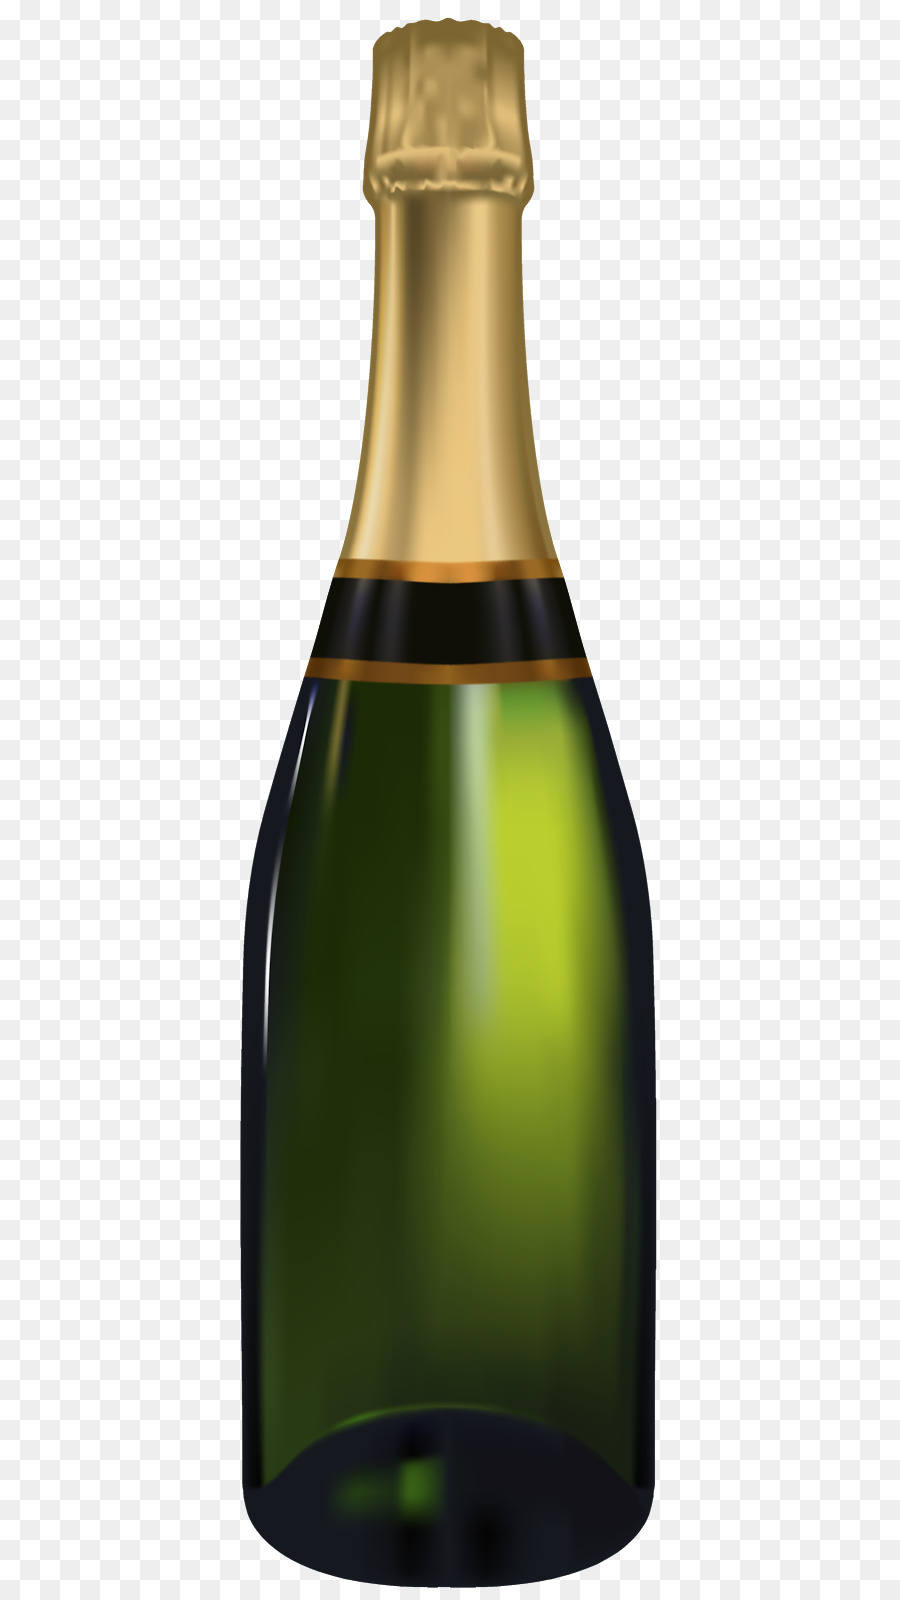 Champagner, Alkoholische Getränke-Bier-Wein-Portable Network Graphics - Champagner